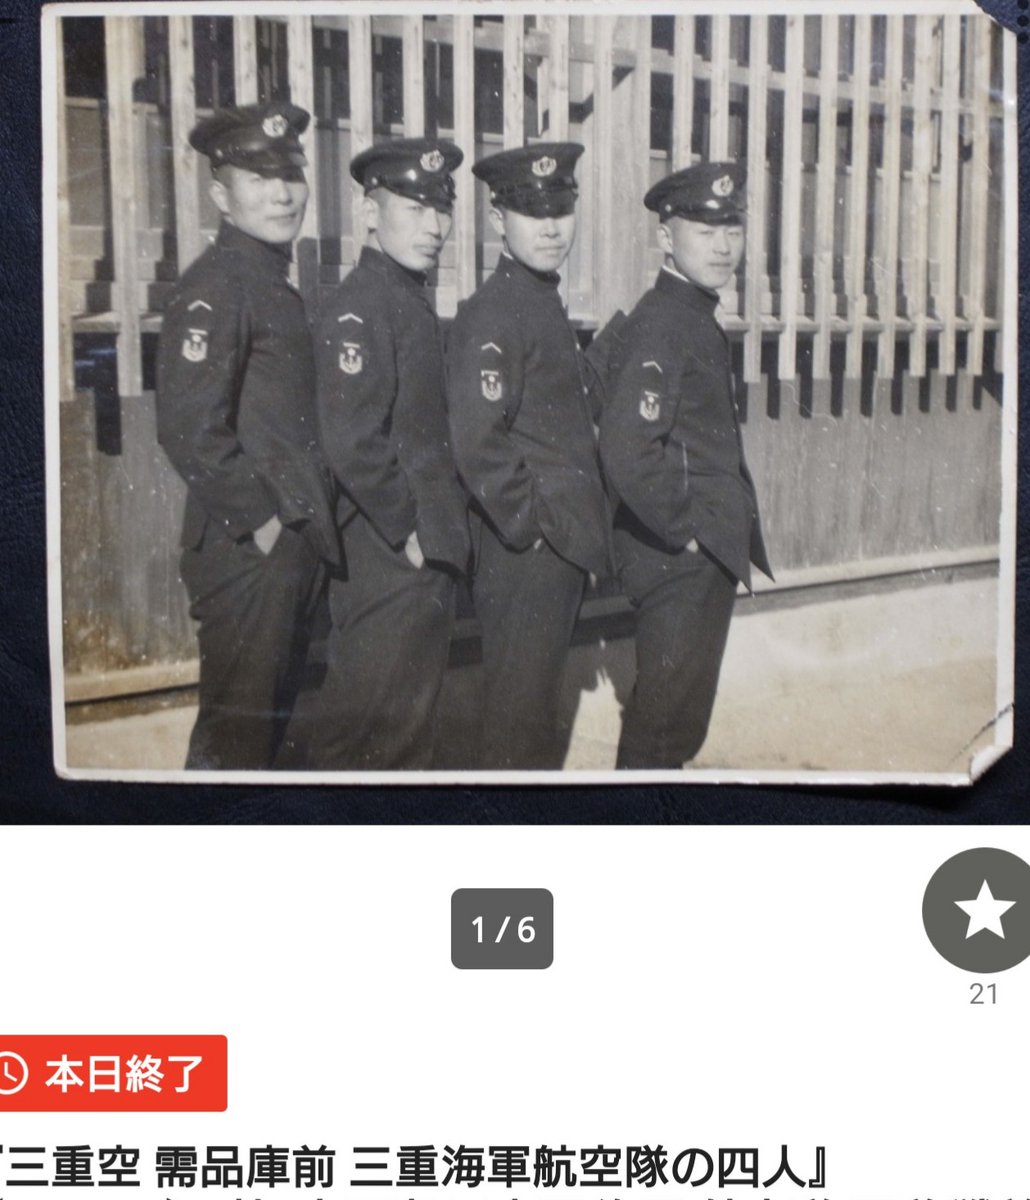 ヤフオクにある帝国海軍の下士官四人の写真がもろにジョジョ三部で笑ってしまった😄 